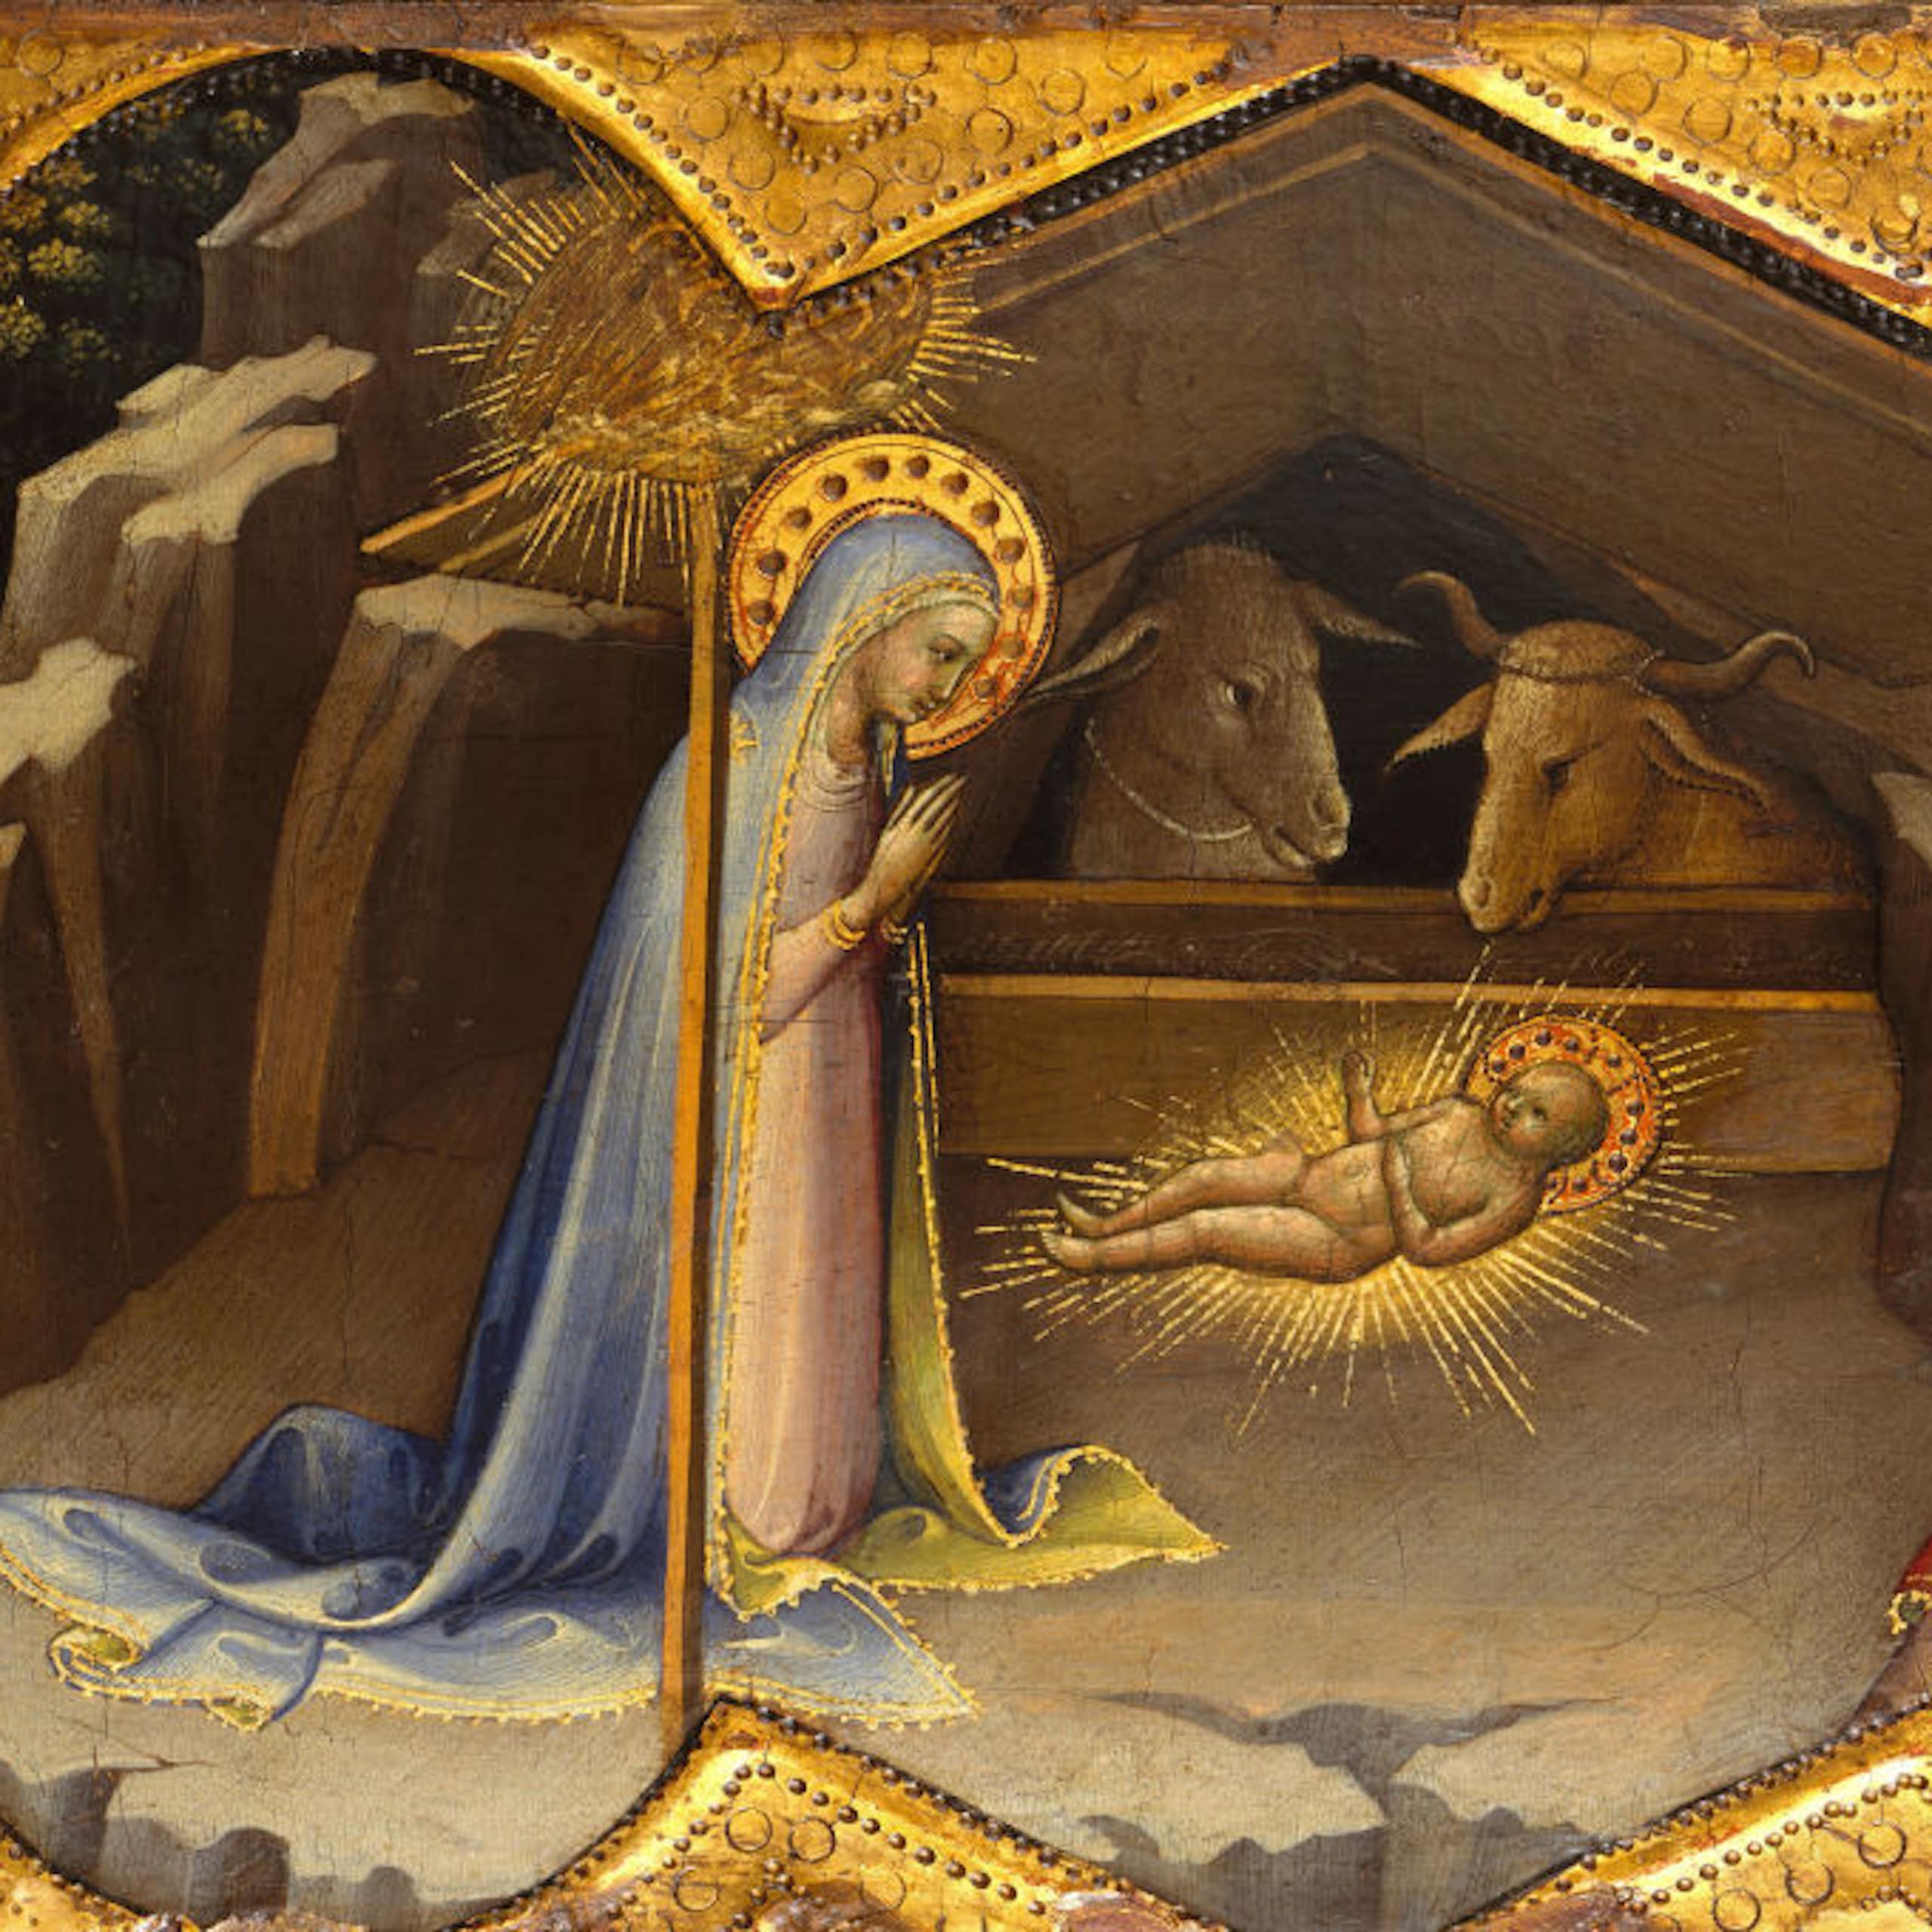 Una pintura con colores oscuros y dorados muestra a María y José en el pesebre con el niño Jesús.